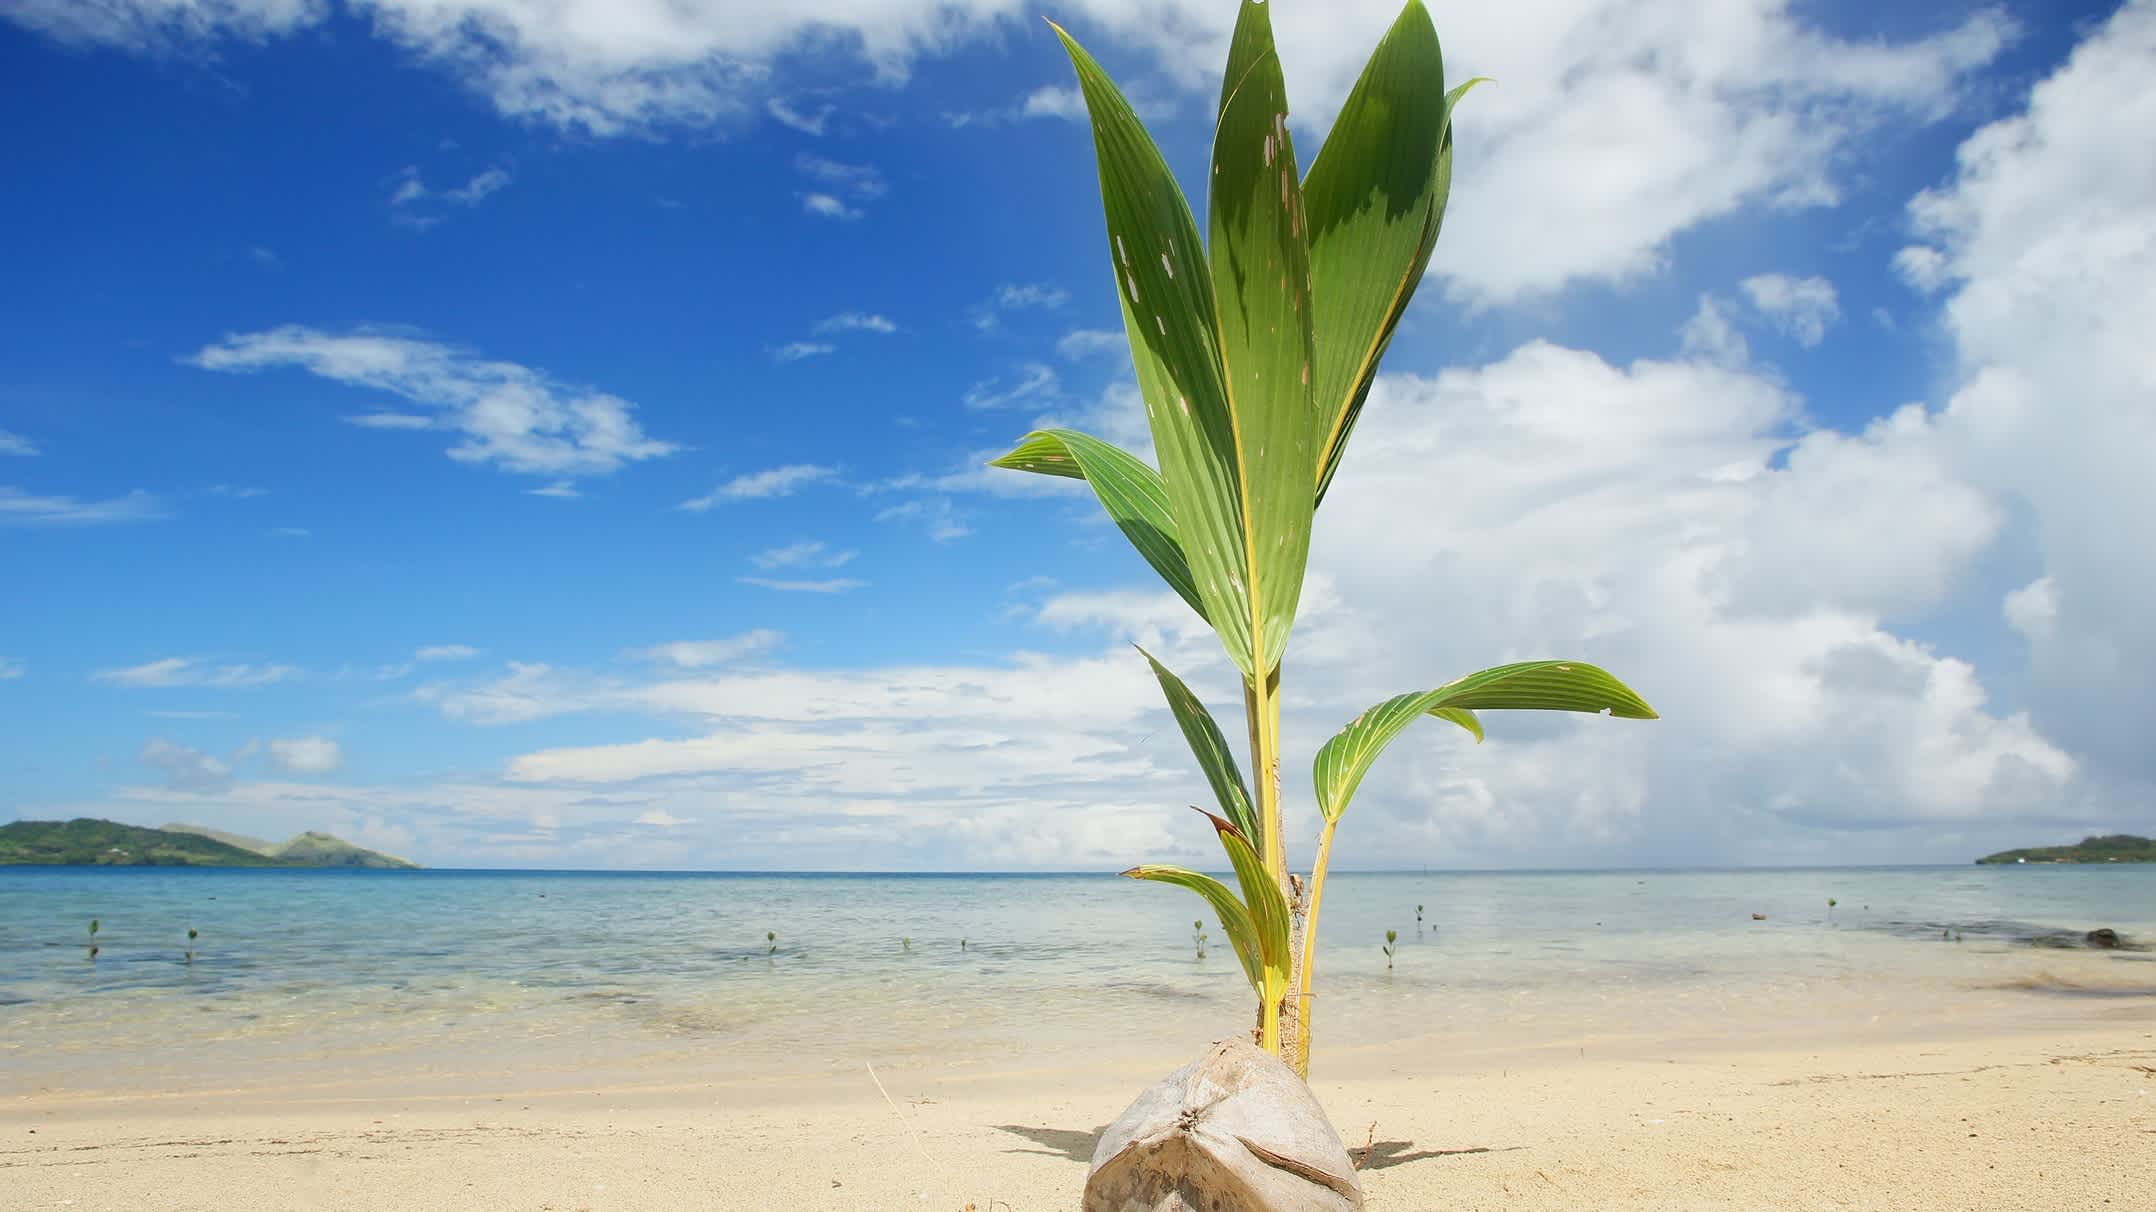 Palmenspross an einem tropischen Strand auf Fidschi.

